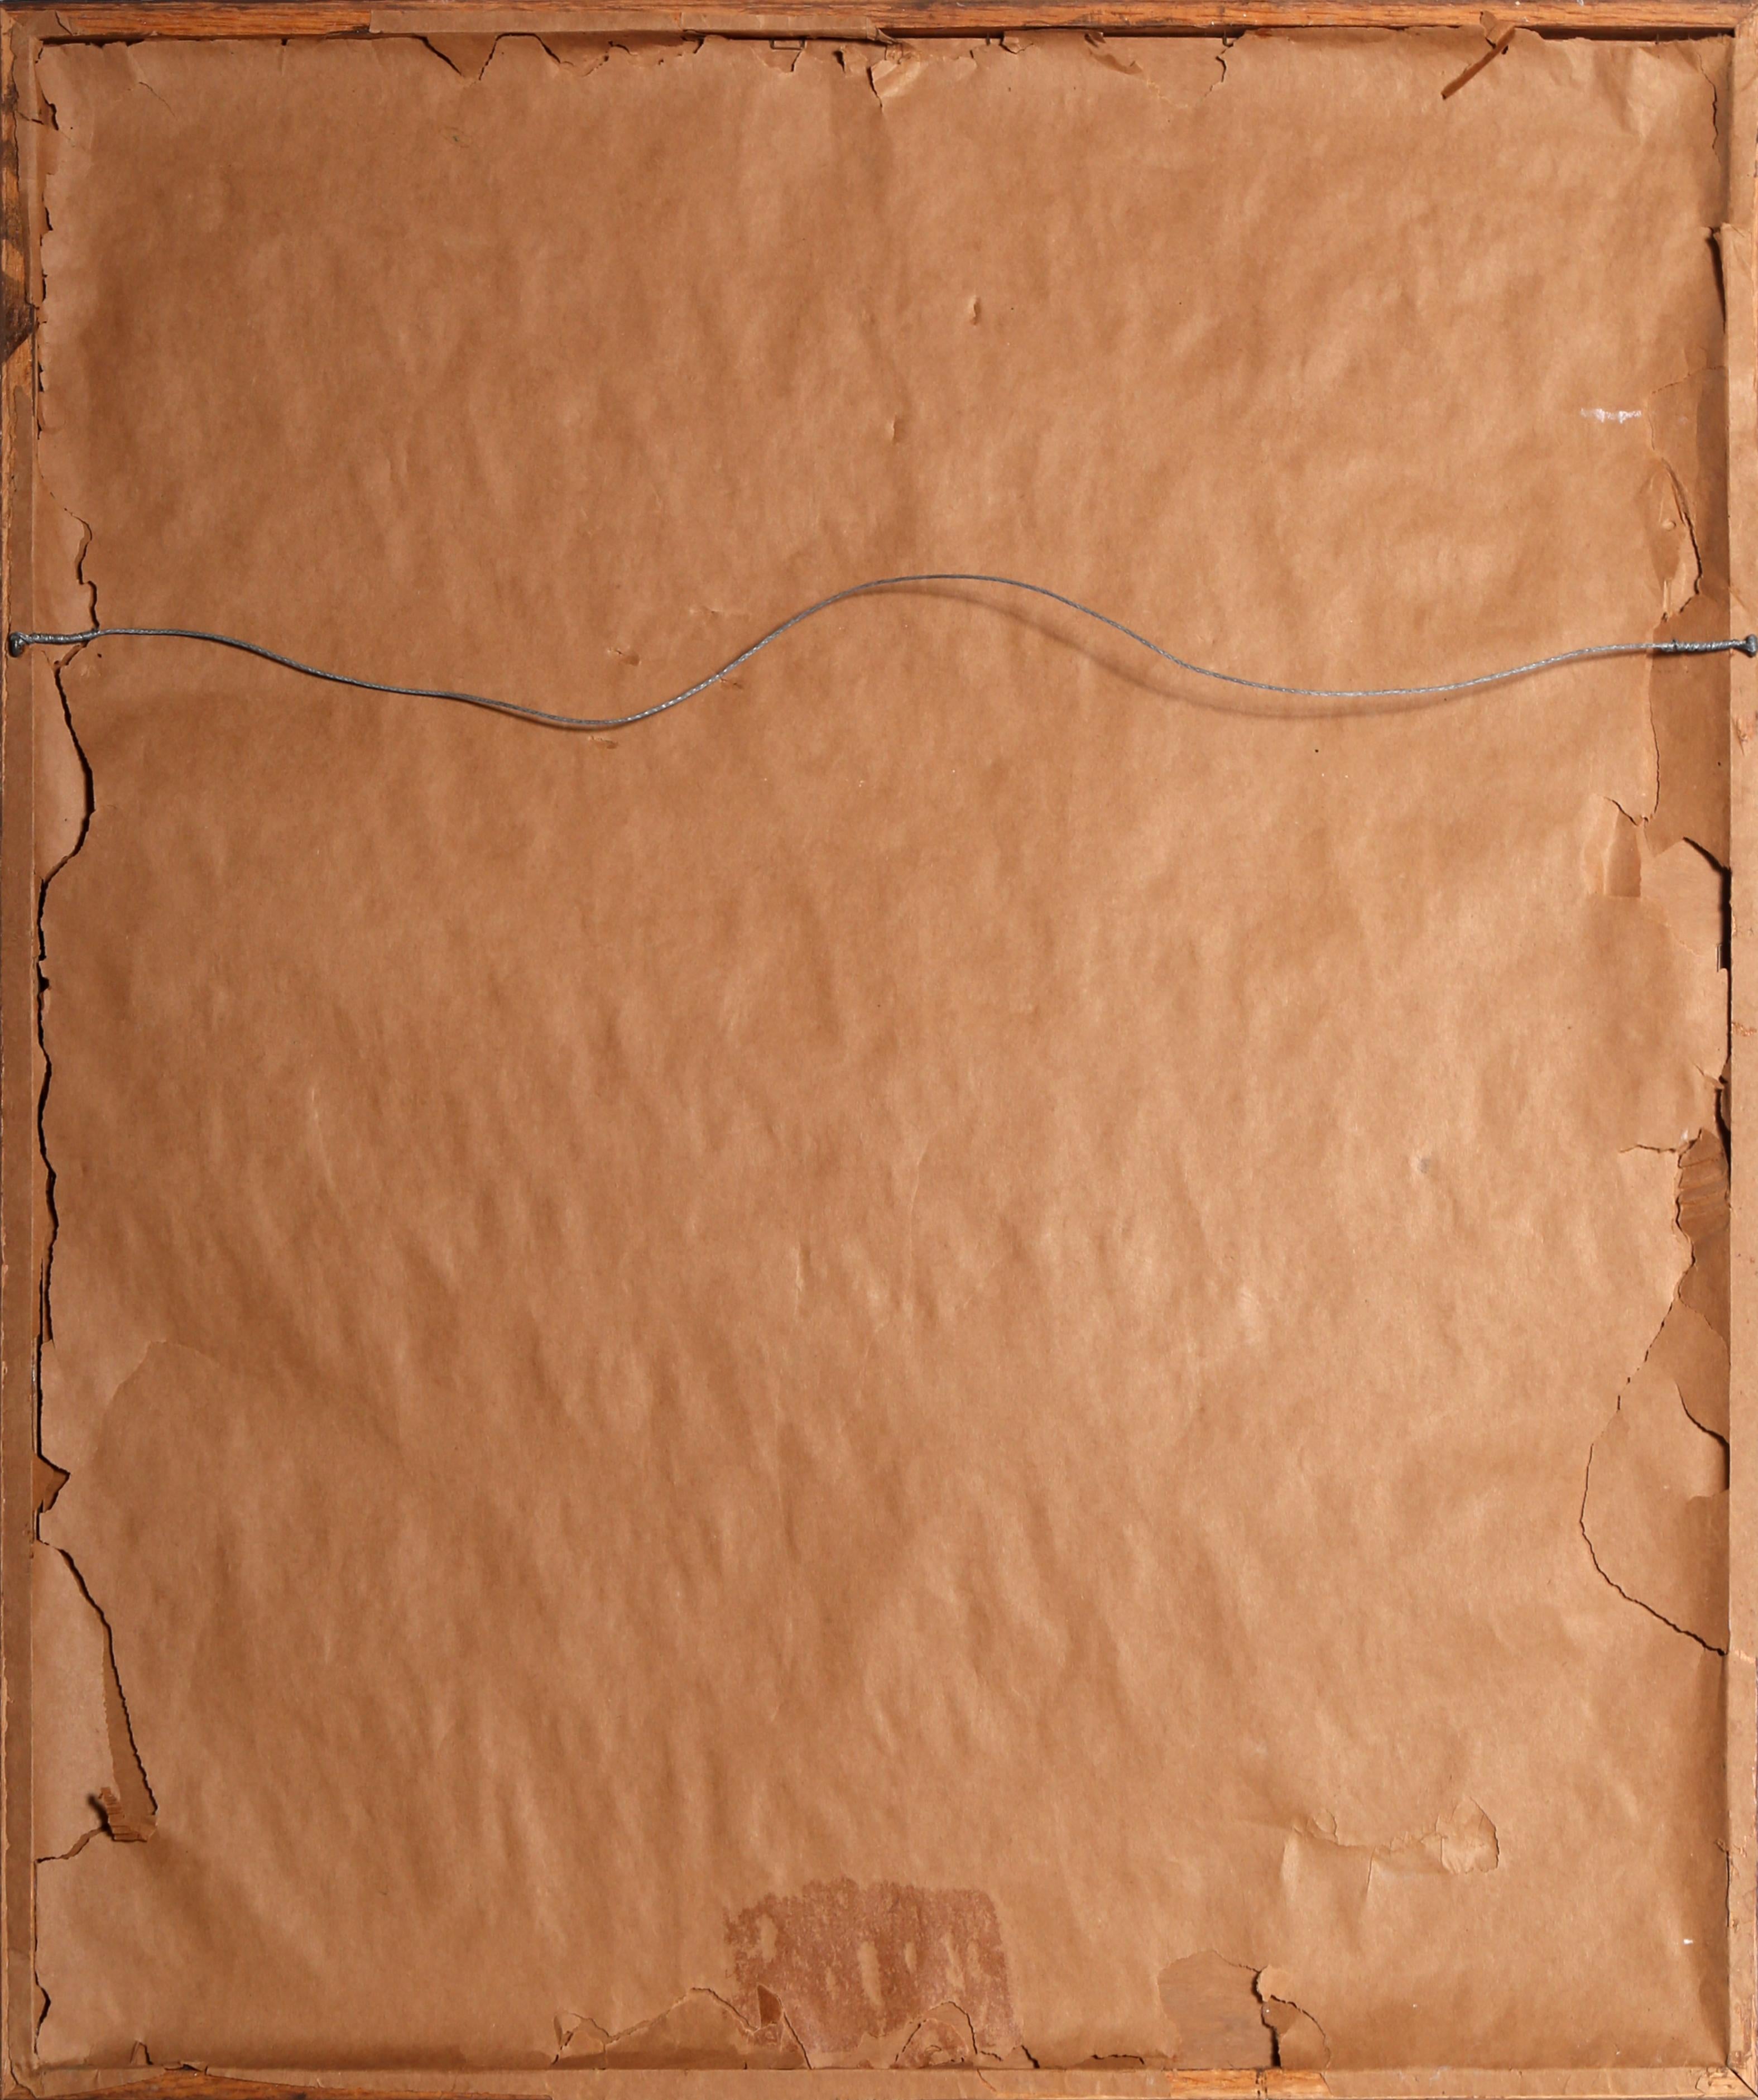 Self-Portrait in Unterwäsche
John Hardy, Amerikaner (1923-2014)
Datum: 1962
Pastellkreide auf Aquarellpapier, signiert und datiert
Bildgröße: 23,5 x 18 Zoll
Größe: 81,28 x 68,58 cm (32 x 27 Zoll)